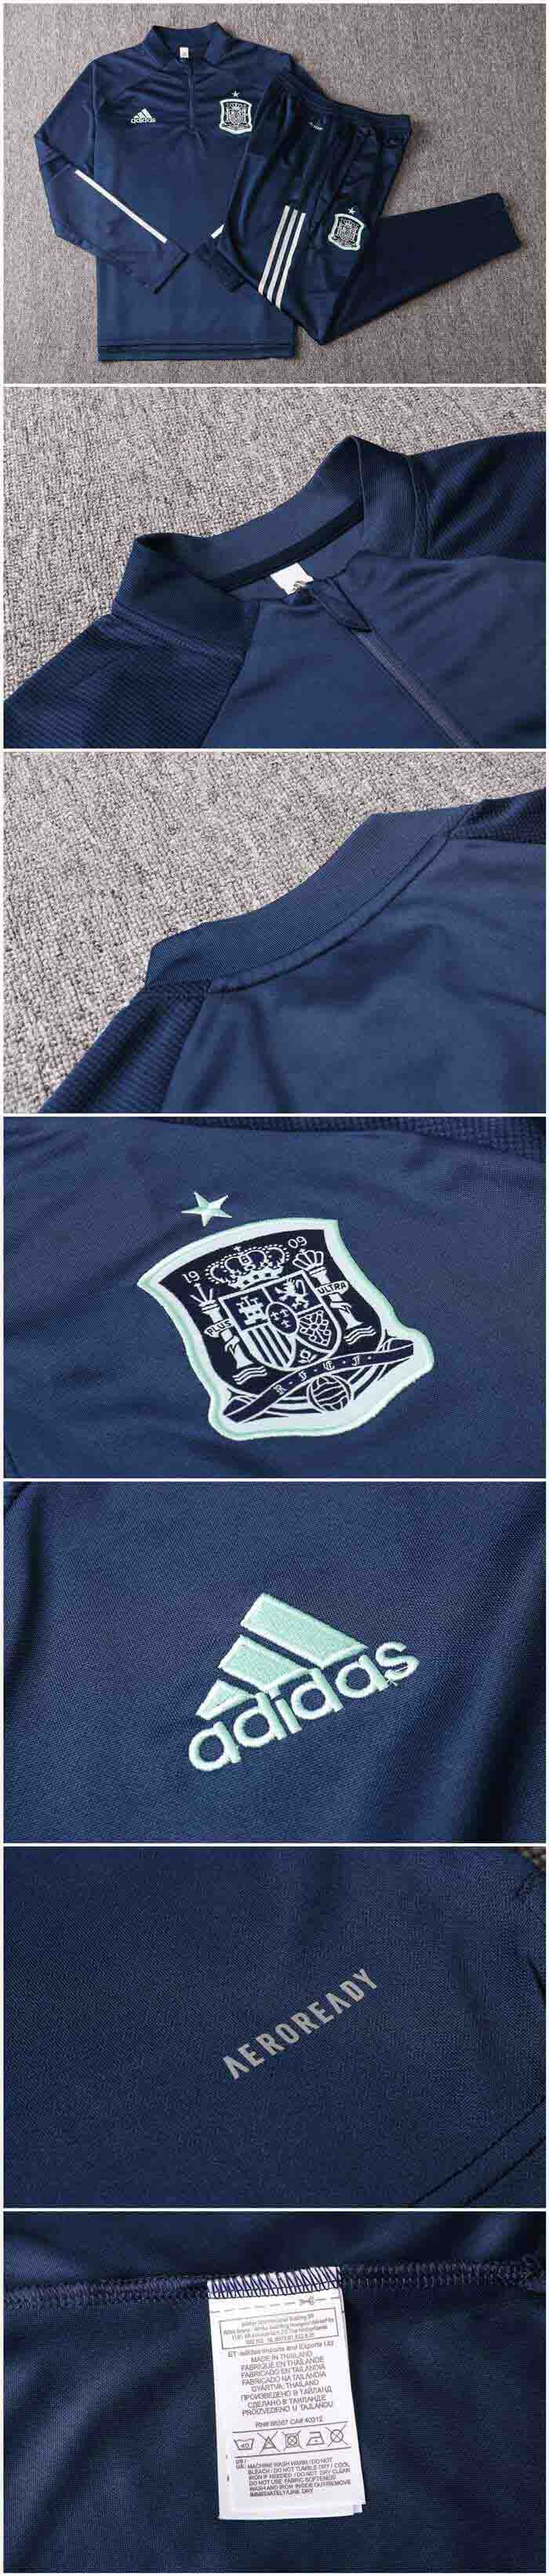 2020 Spain Navy Zipper Sweat Shirt Kit